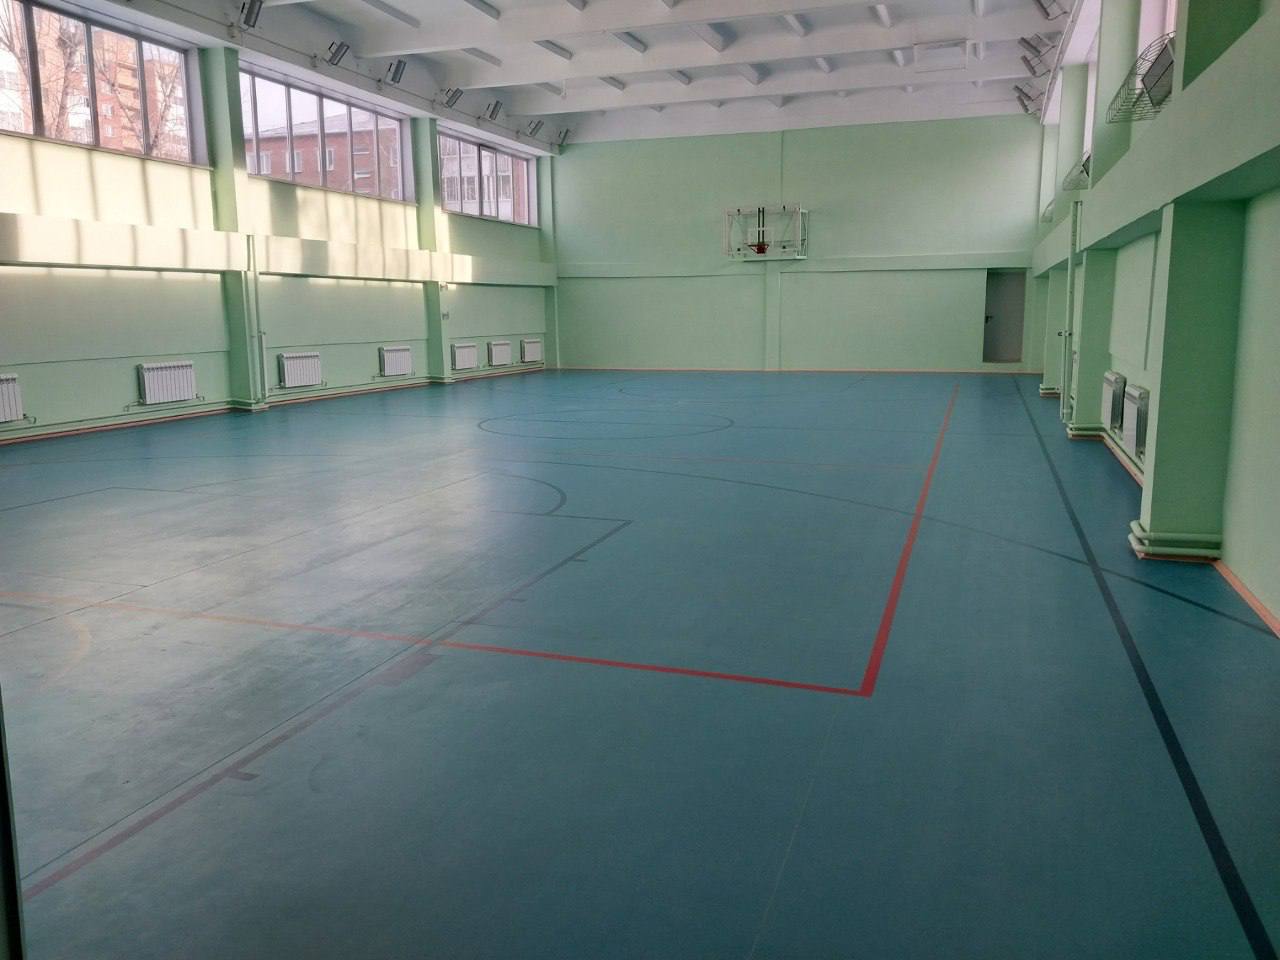 Спортзал отремонтировали в гимназии №44 в Иркутске